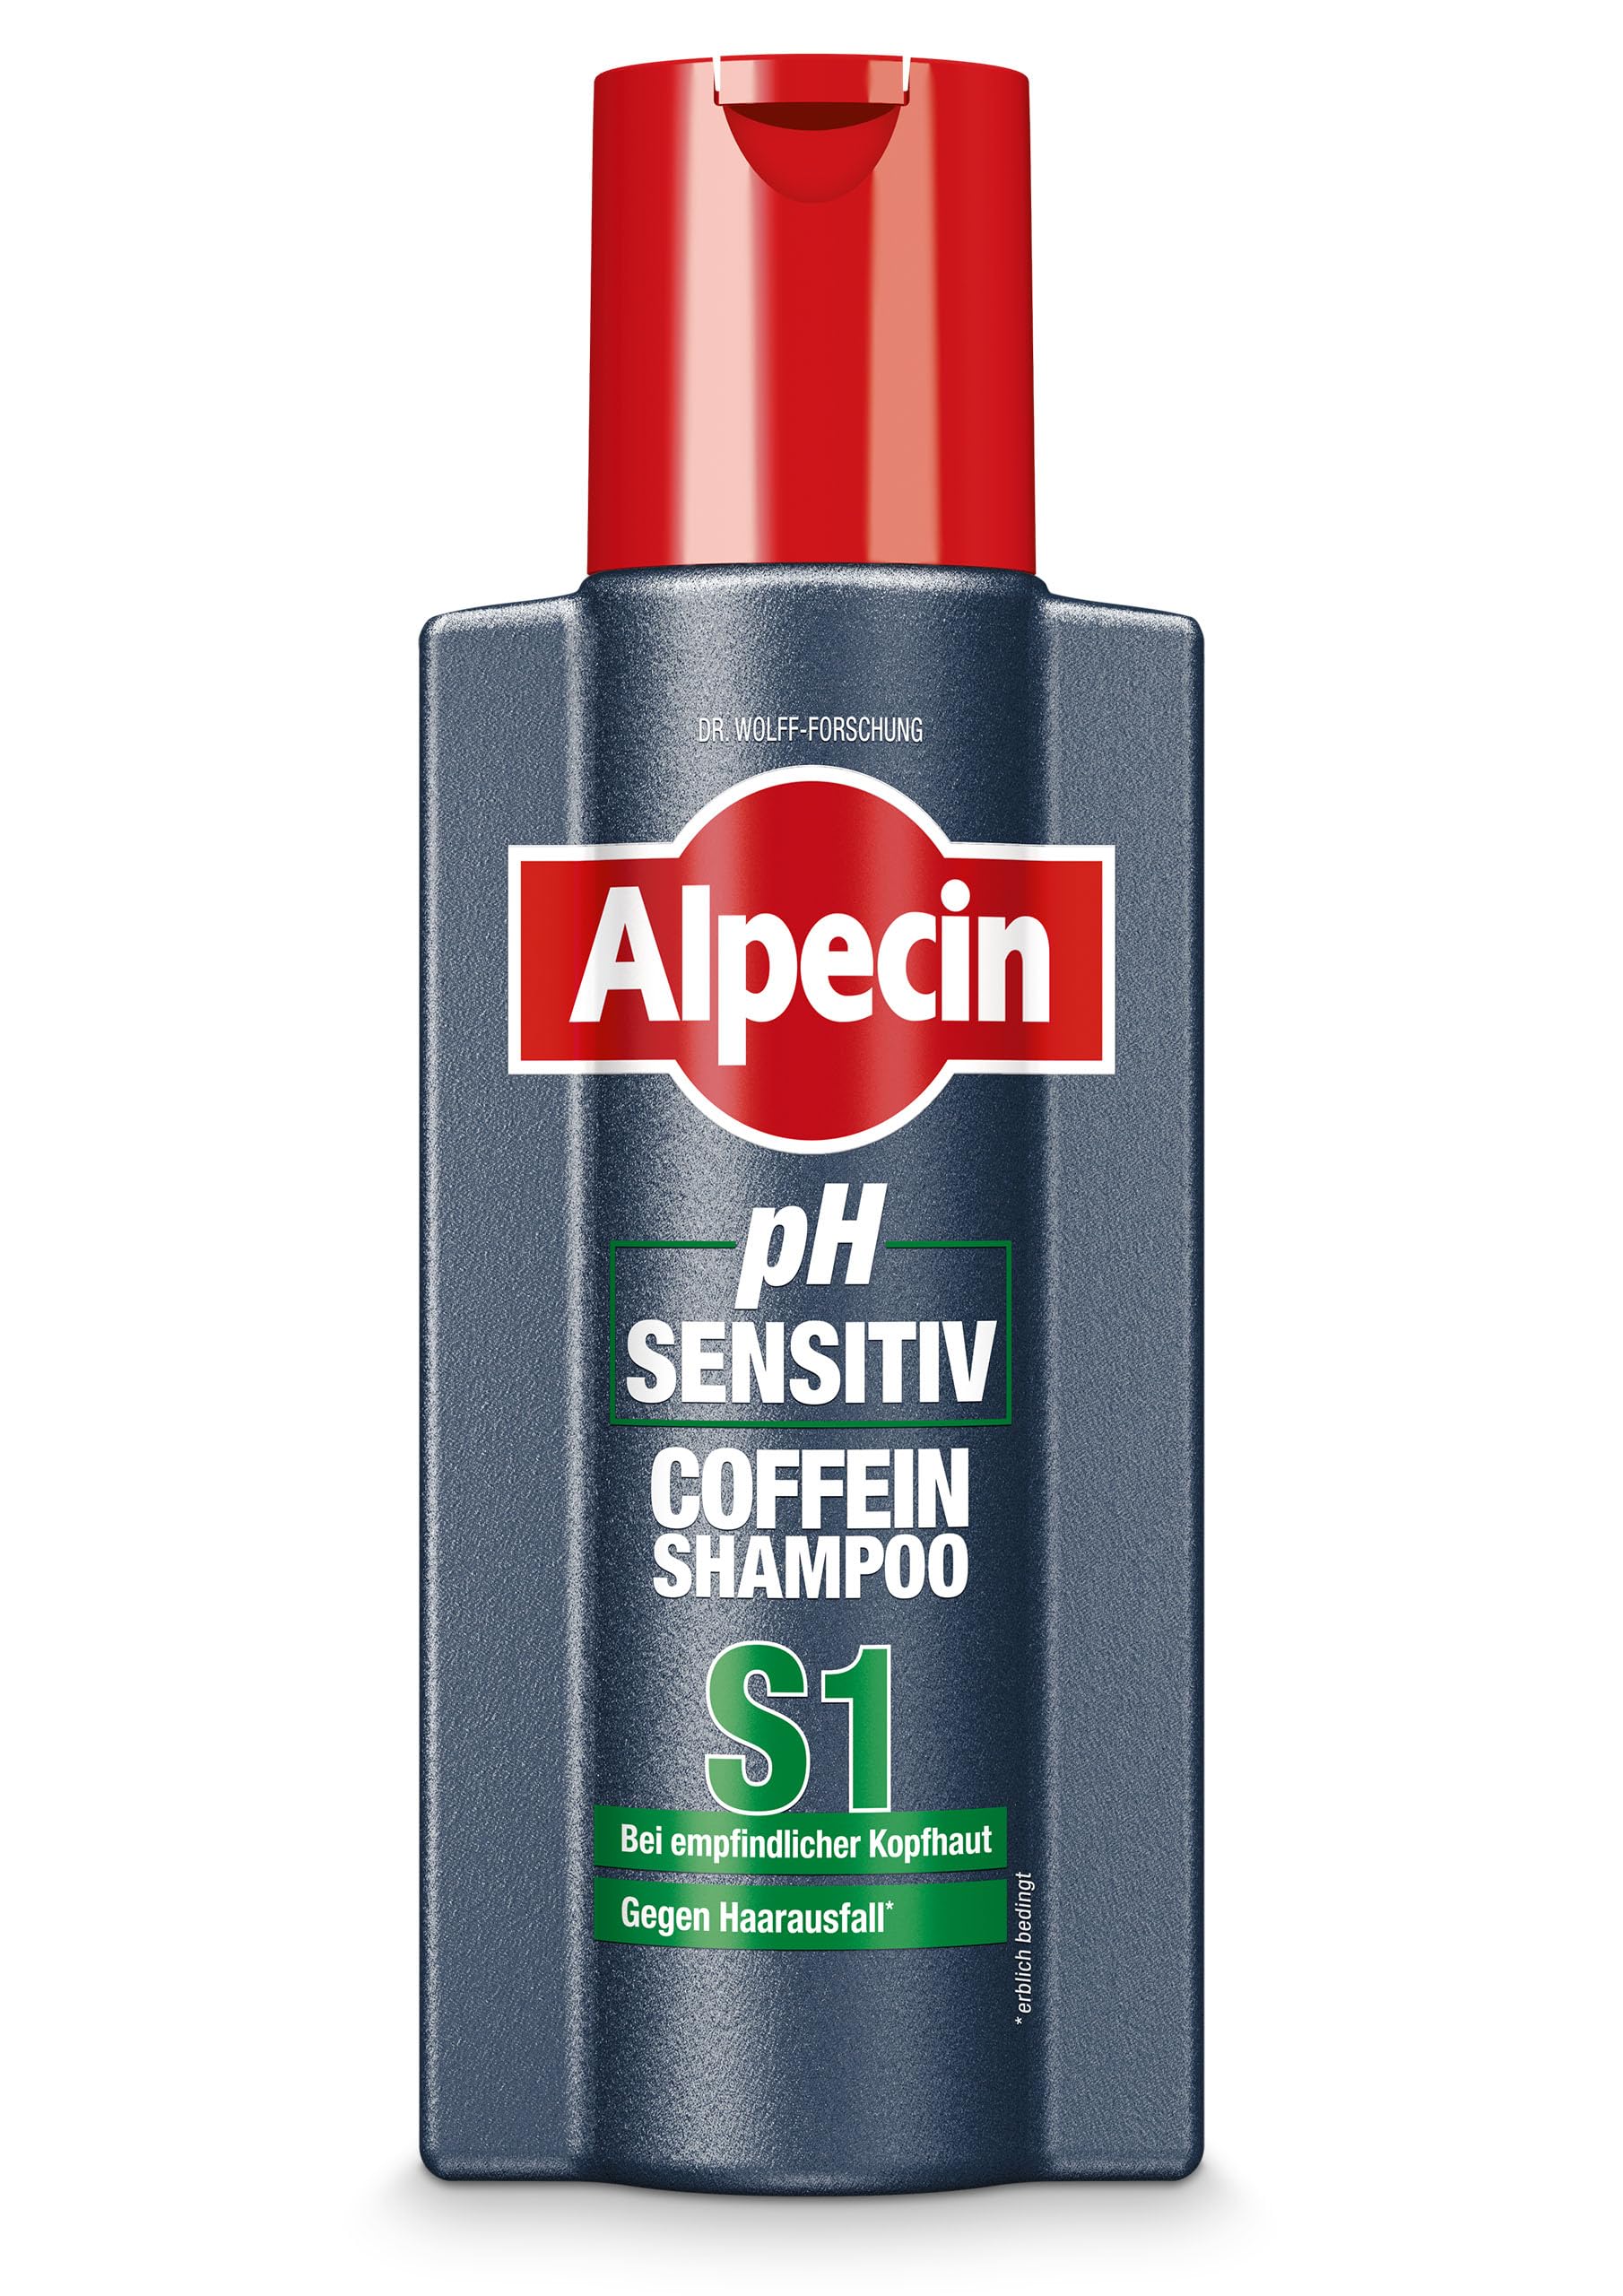 alpecin c1 szampon opinie